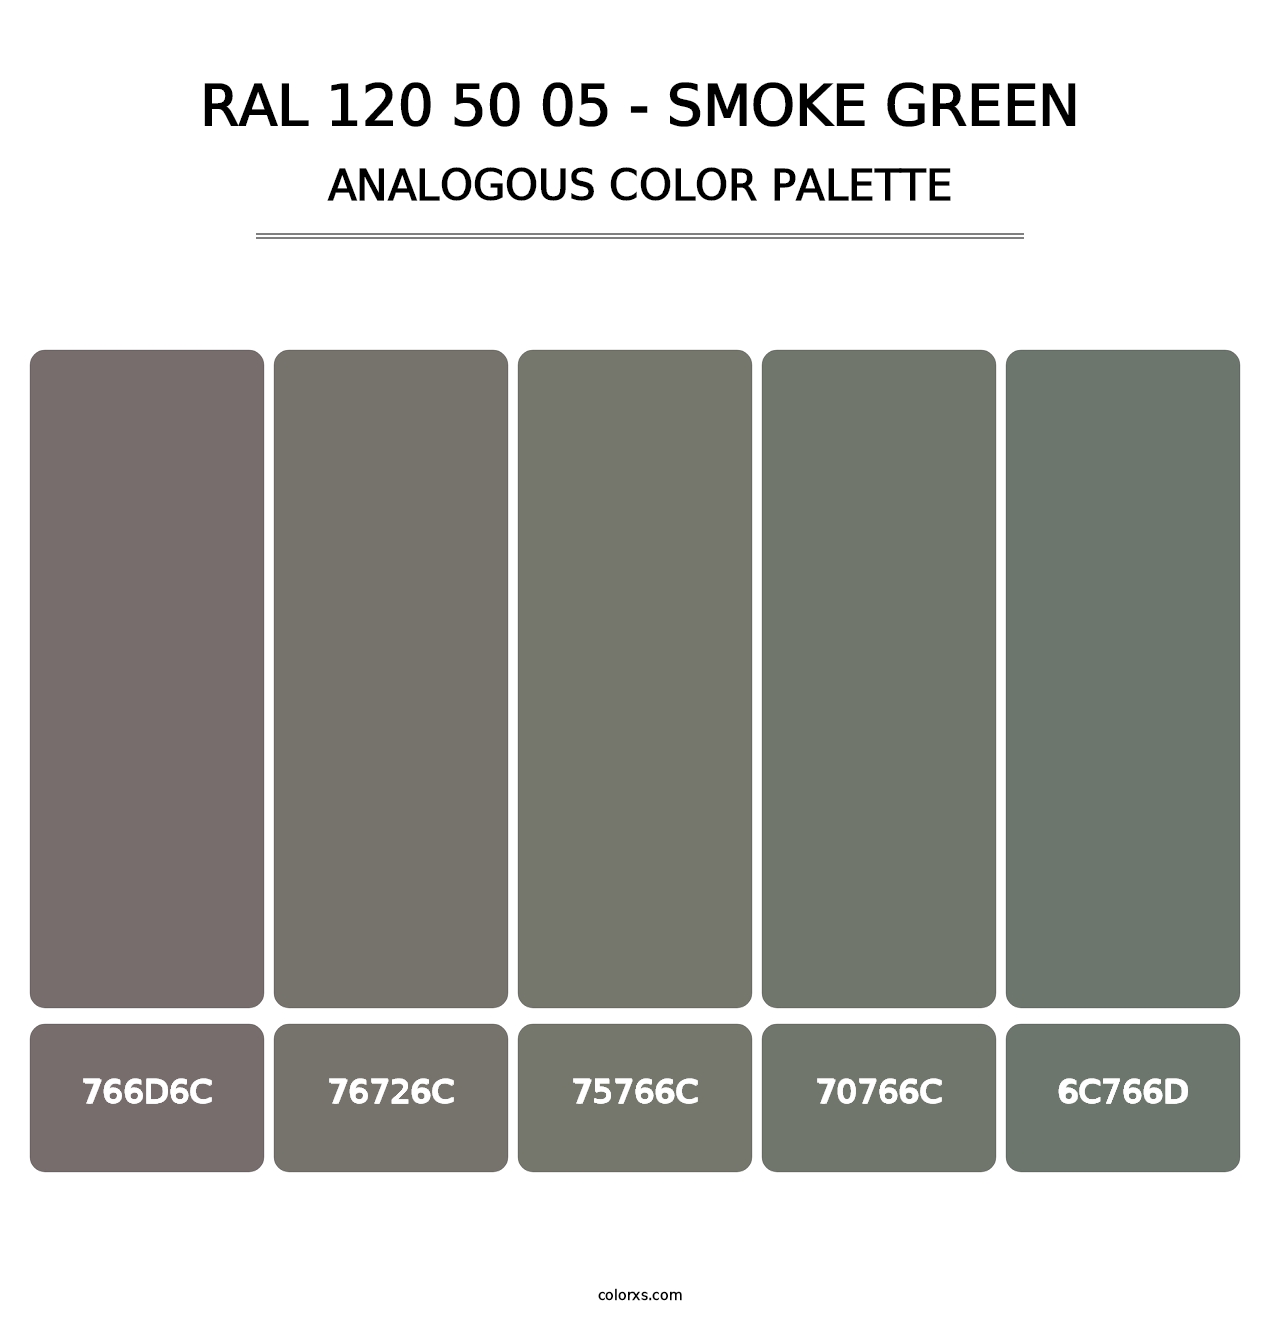 RAL 120 50 05 - Smoke Green - Analogous Color Palette